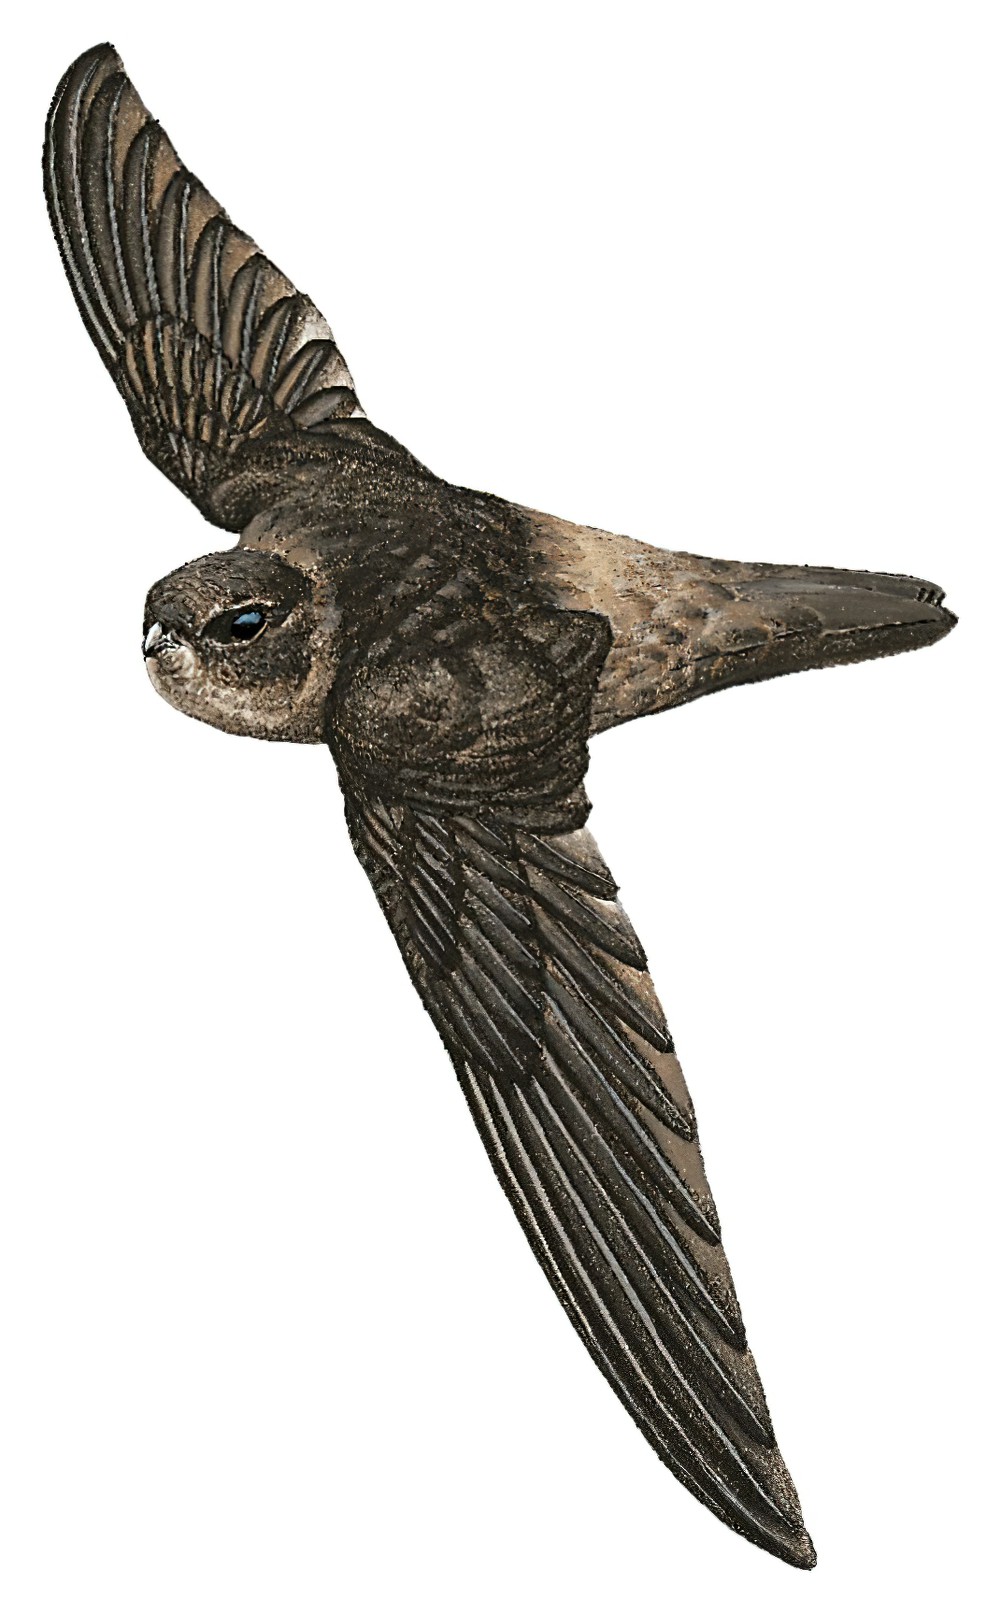 Marquesan Swiftlet / Aerodramus ocistus